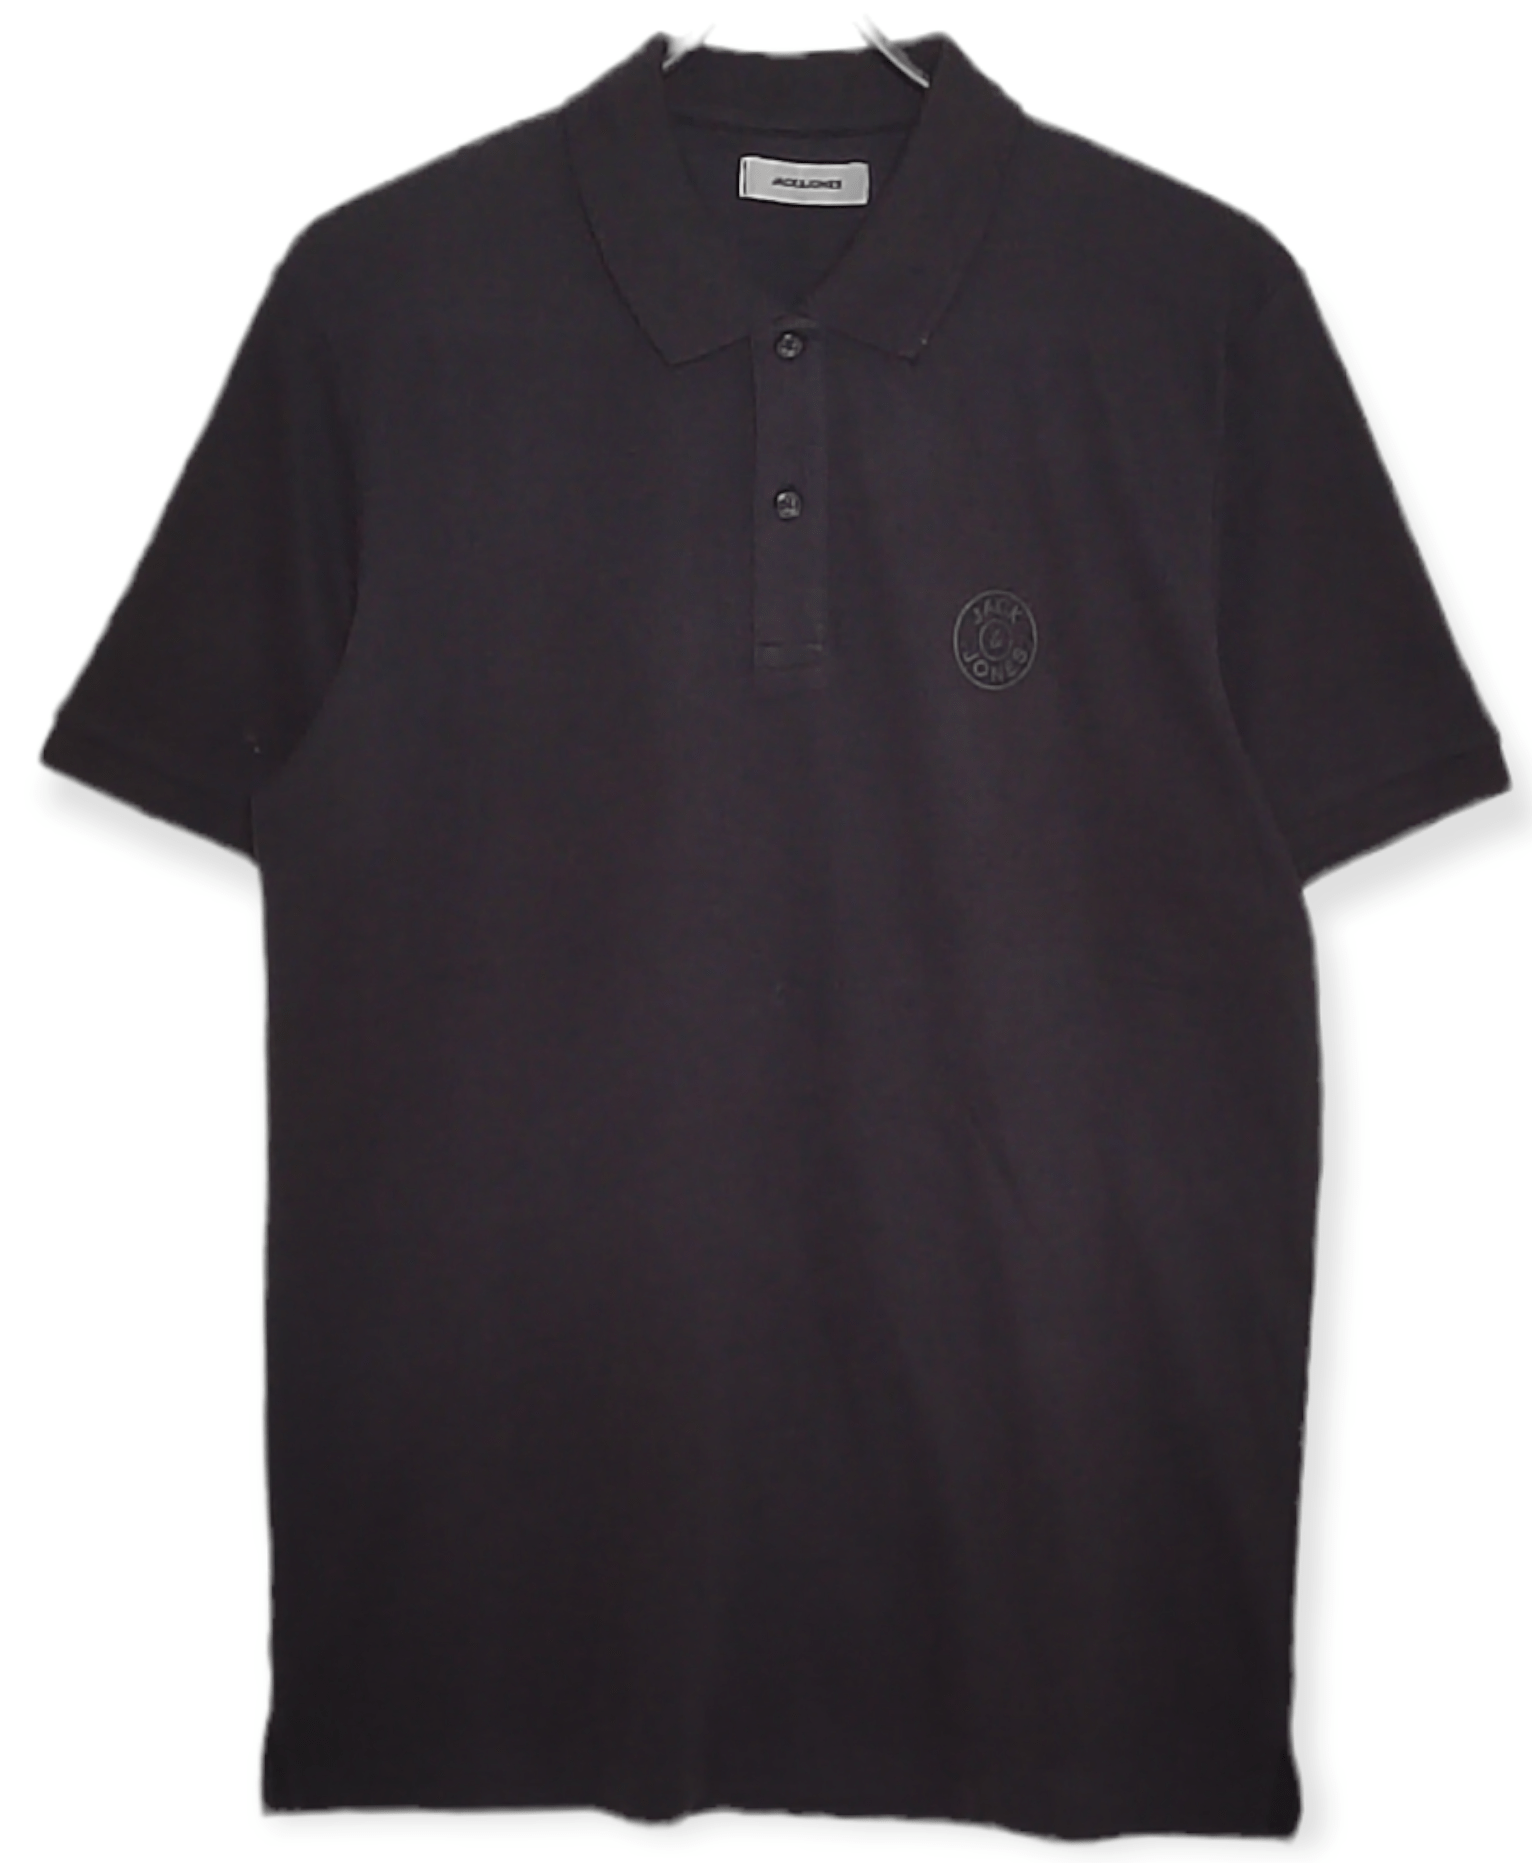 ElOutlet - Men Summer Polo Shirts L JJ Polo Shirt - Black Jersey